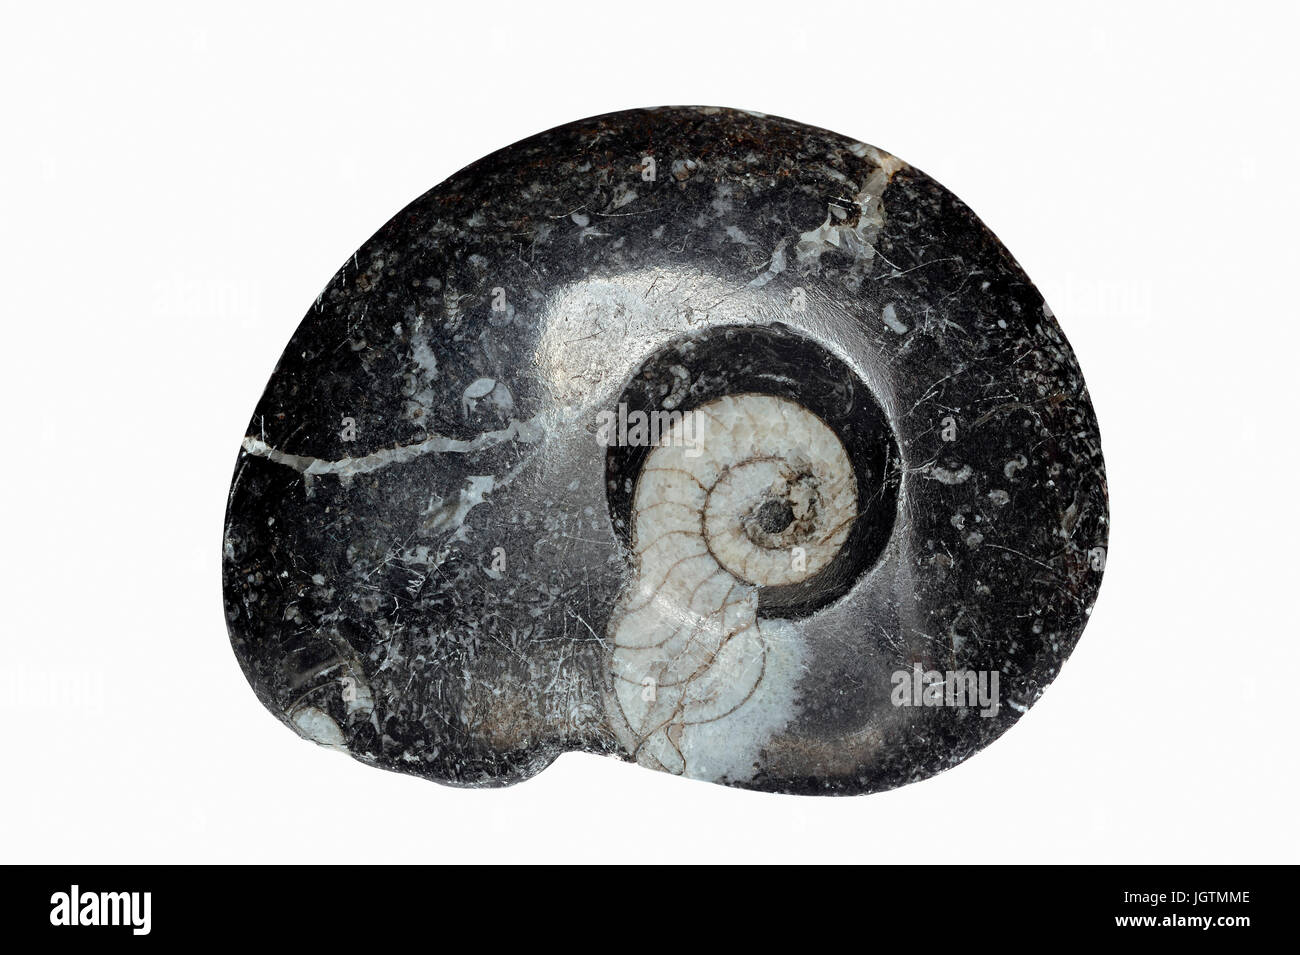 Fossiler Ammonit / Ammoniten | Fossil ammonite Stock Photo